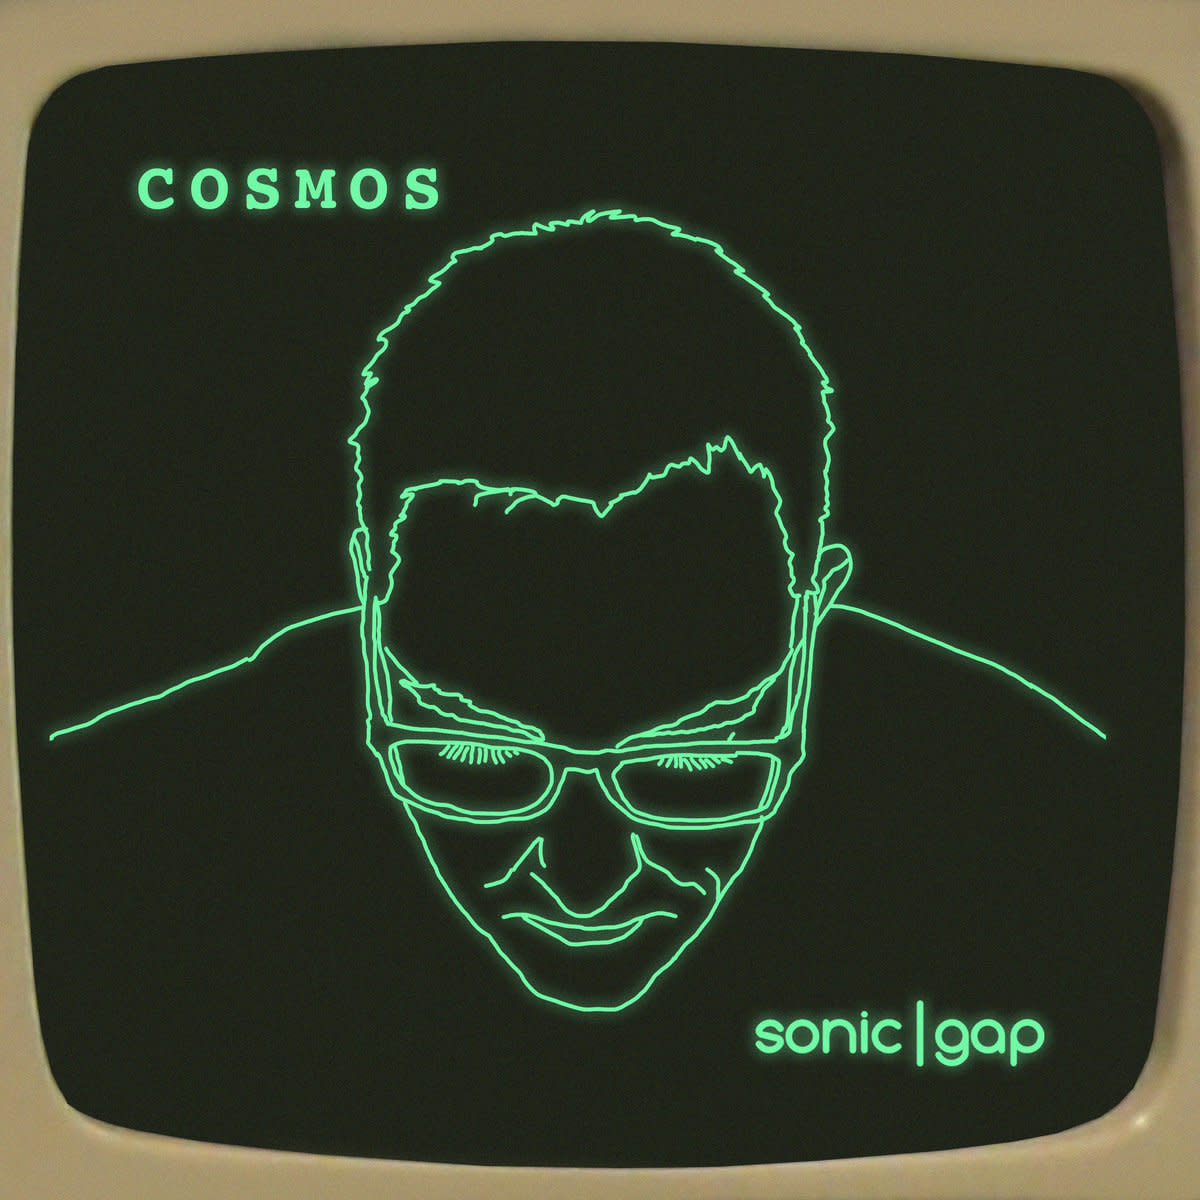 "Cosmos"